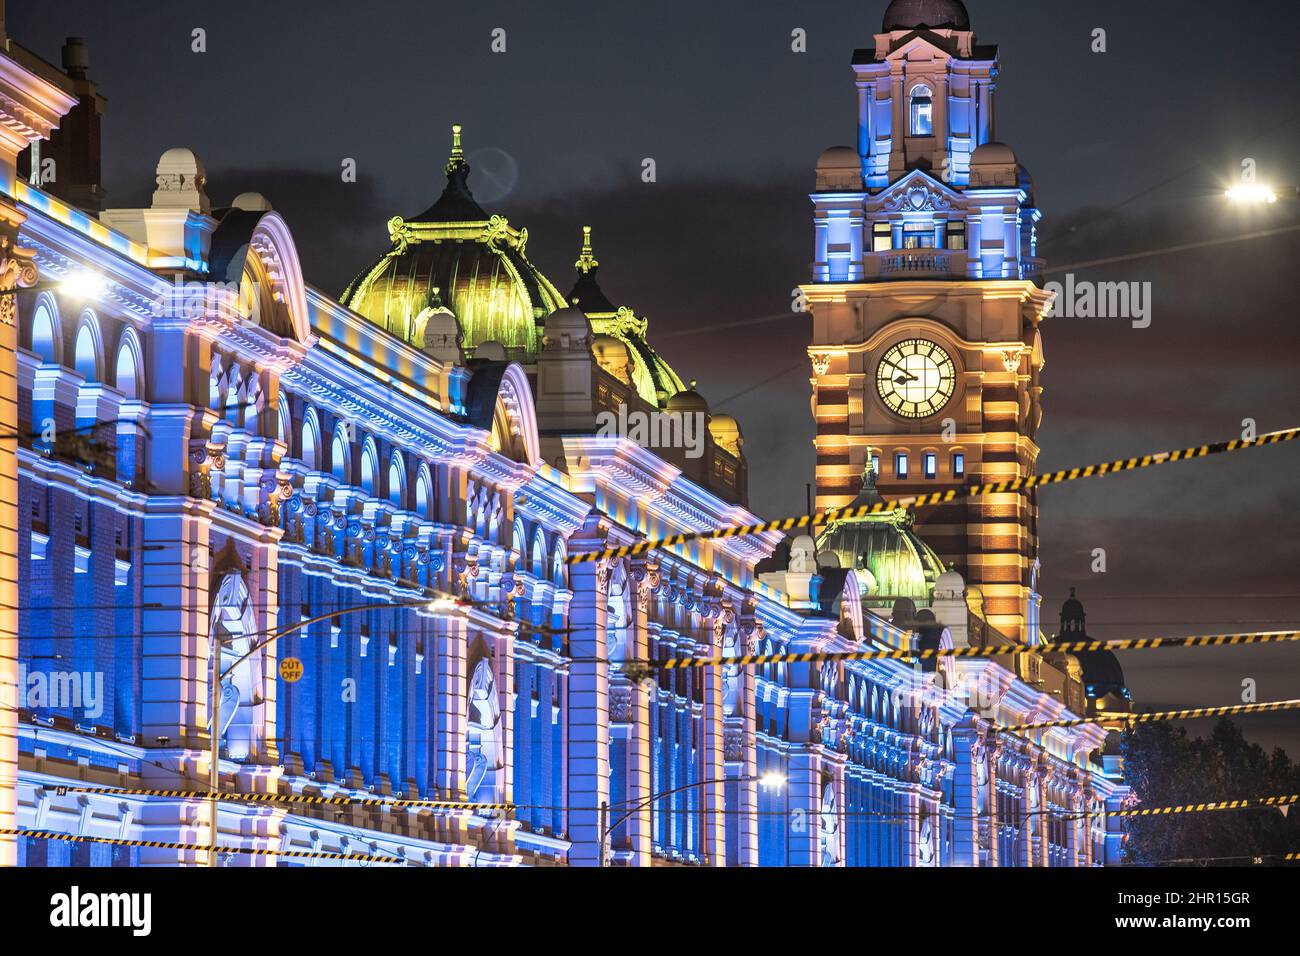 Melbourne, Australia. Melbourne Landmark Flinders Street Railway Station illuminata di notte nei colori dell'Ucraina come segno di solidarietà. Foto Stock